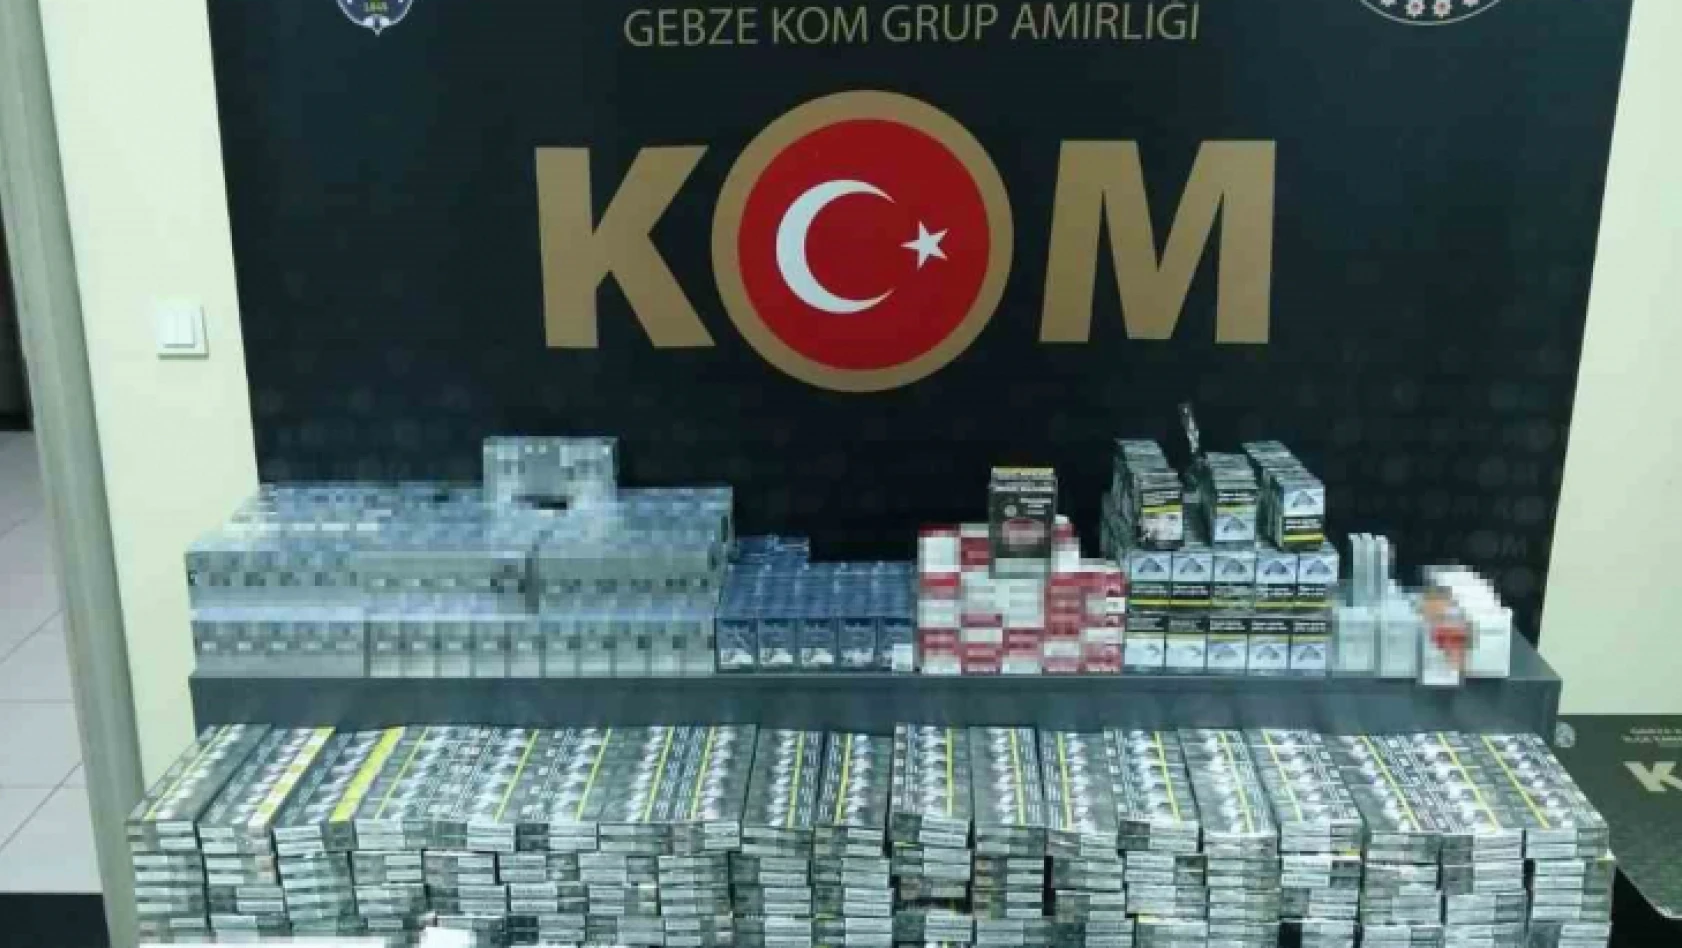 Kocaeli'de 3 bin 109 paket kaçak sigara ele geçirildi